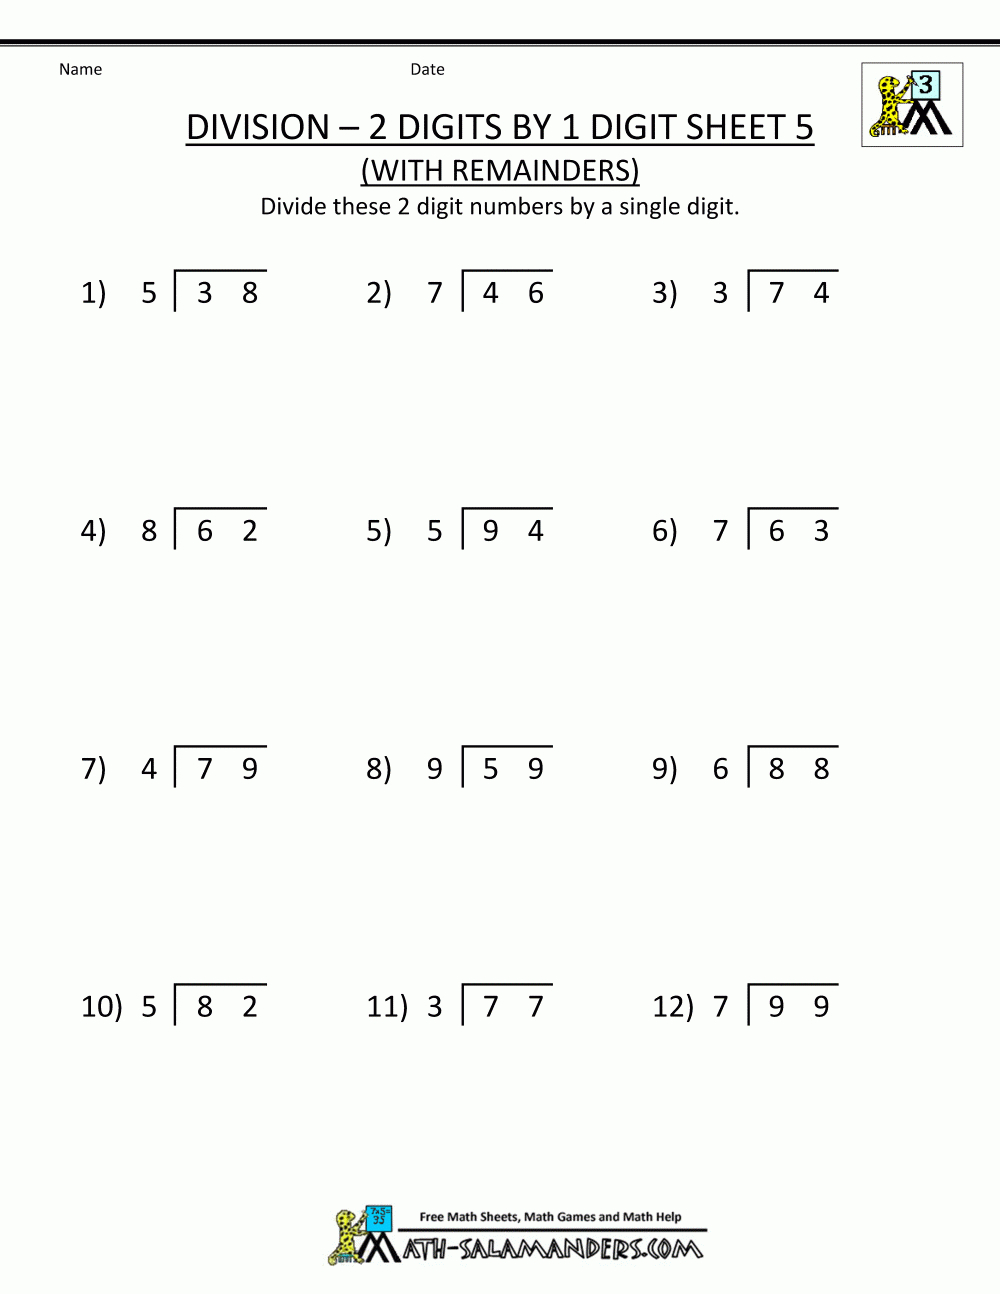 Division Worksheets For 3Rd Grade 2 Digits1 Digit 5. | Math - Free Printable Division Worksheets For 5Th Grade